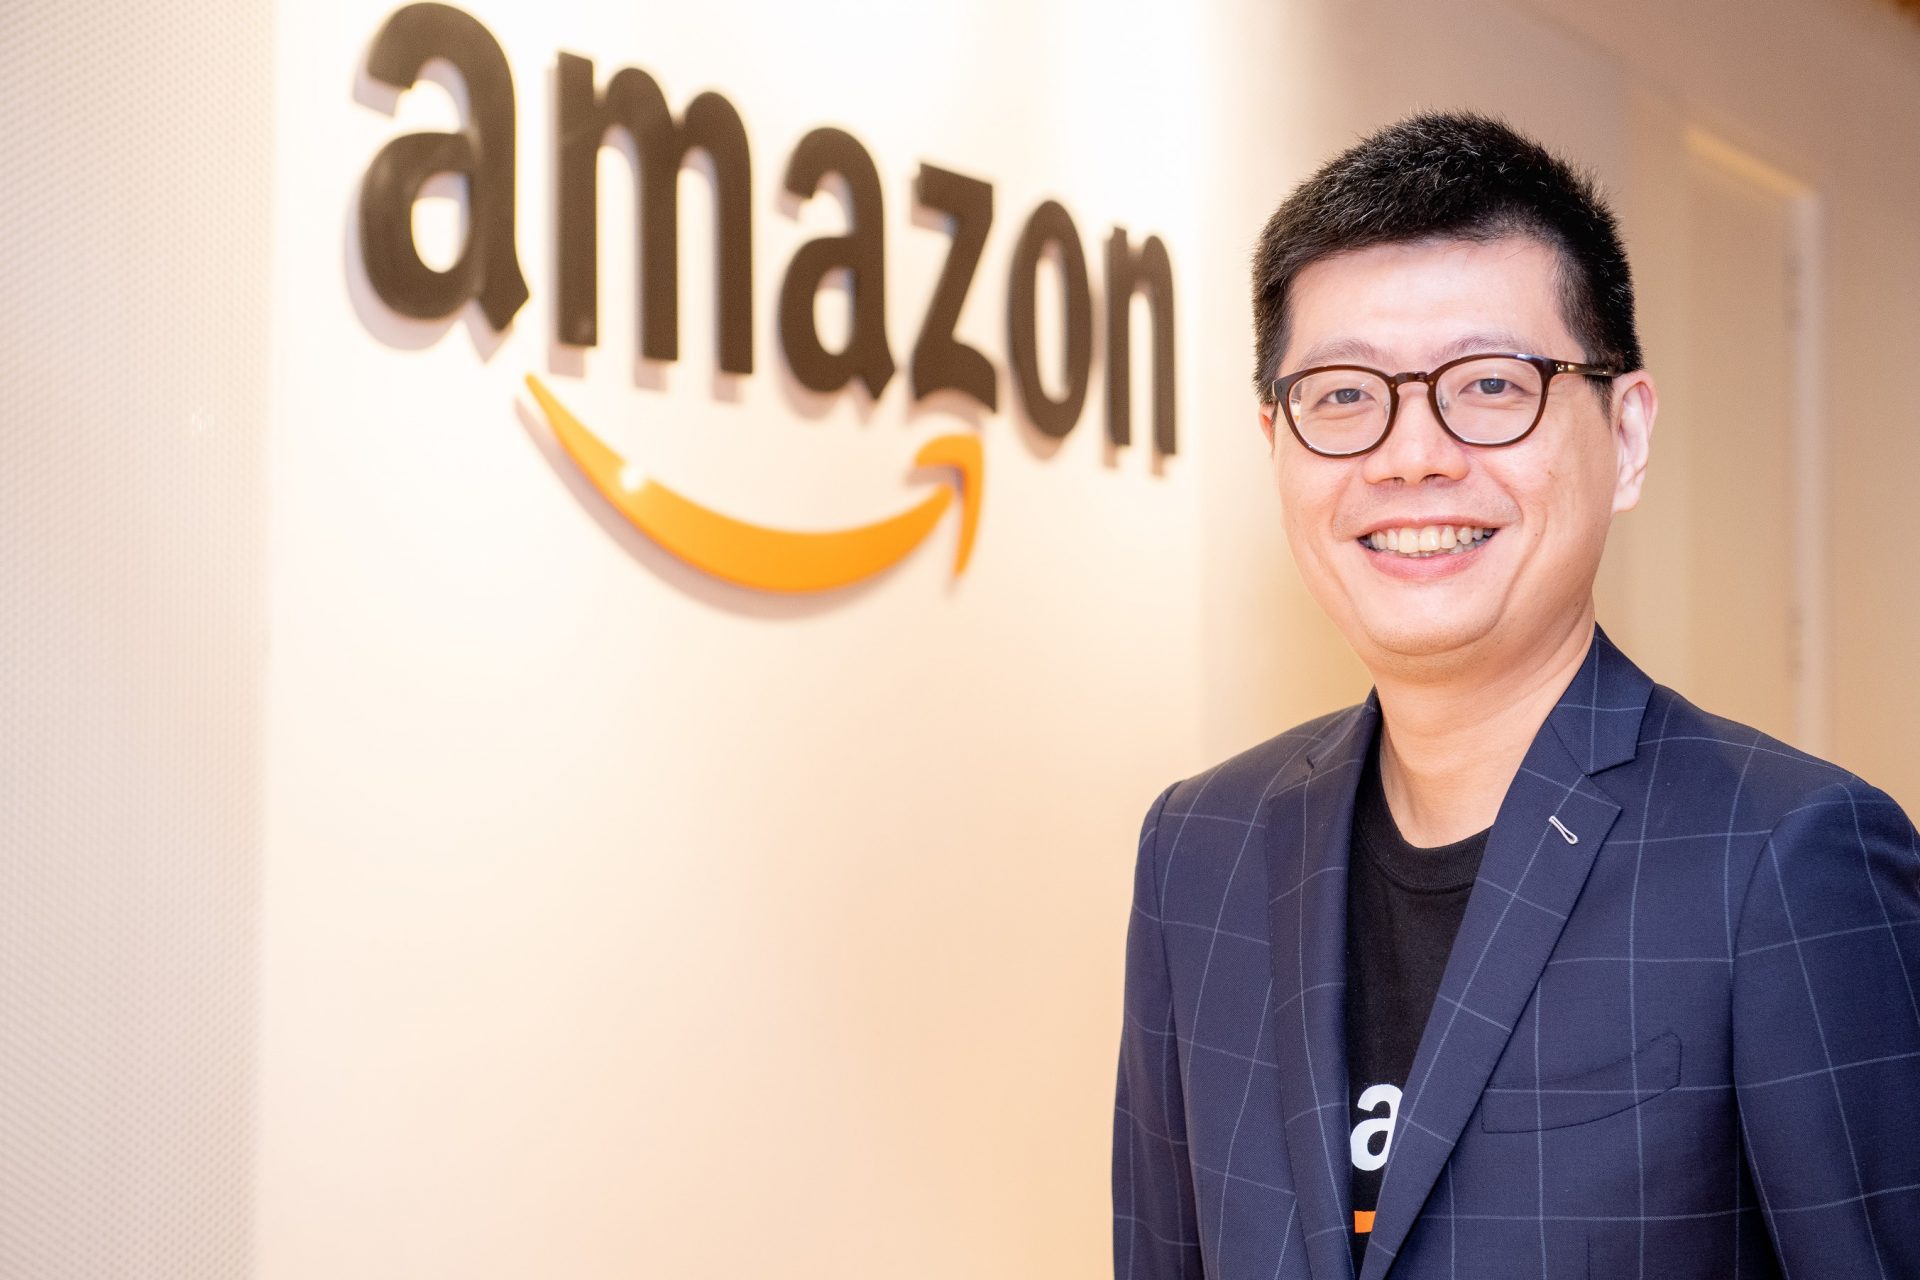 Amazon Global Selling รุกตลาดไทย จัดตั้งทีมงานในกรุงเทพฯ ให้ผู้ค้าไทยขยายธุรกิจไปทั่วโลกผ่านออนไลน์